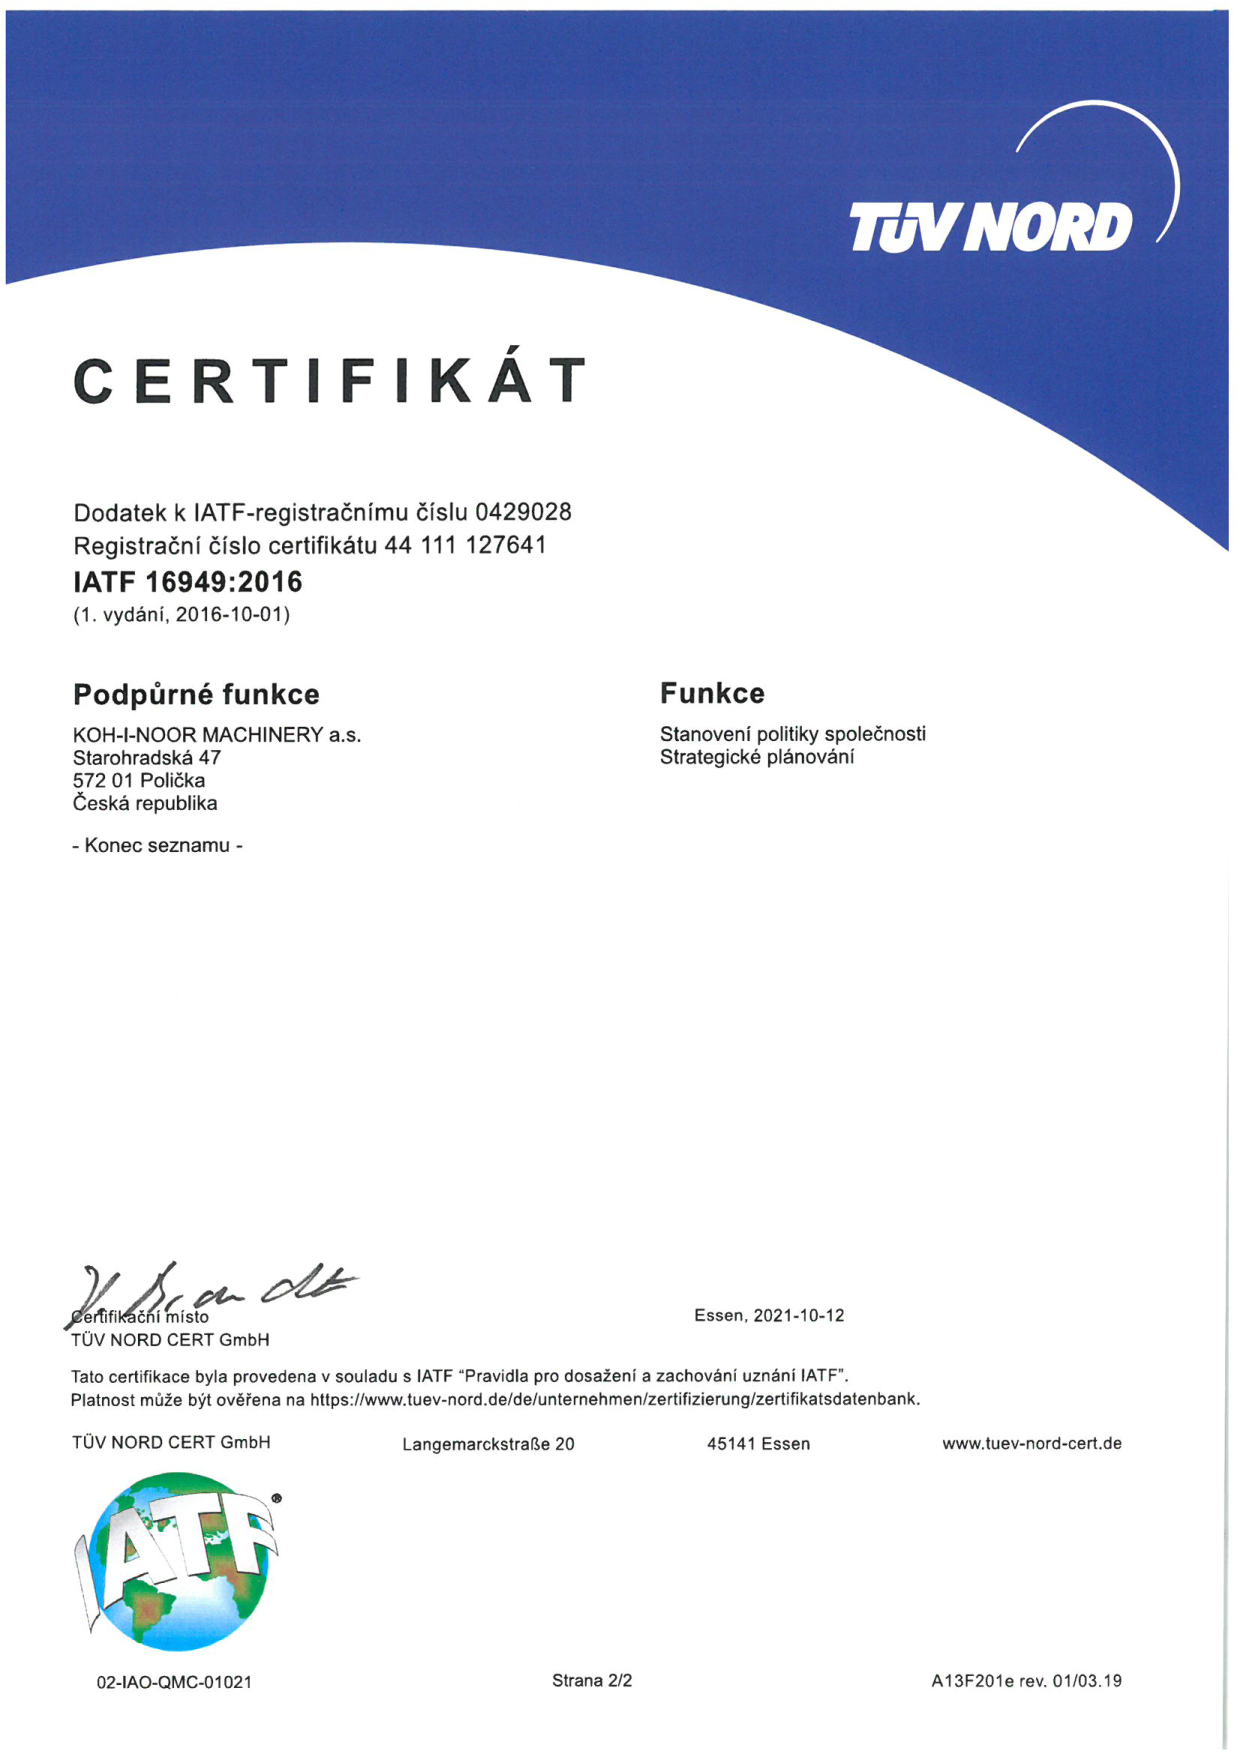 Certifikát ISO/TS 16949:2009 - anglická verze